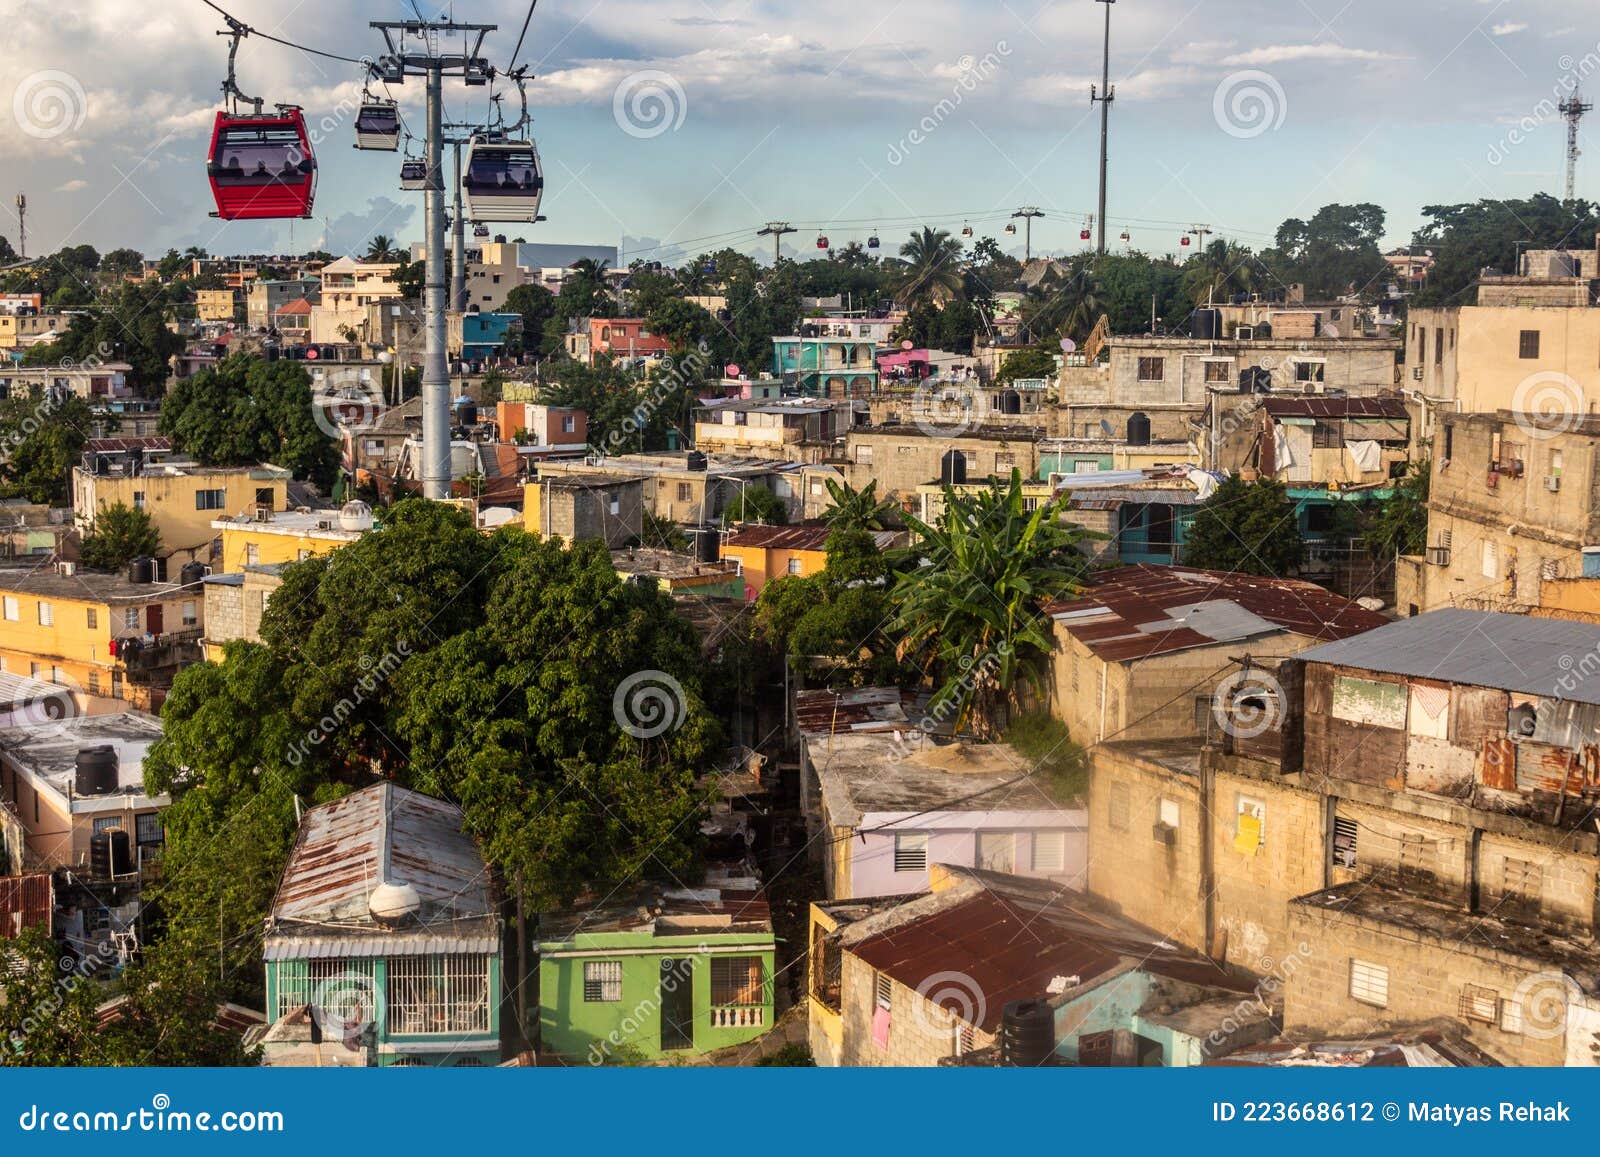 teleferico cable car in santo domingo, capital of dominican republi